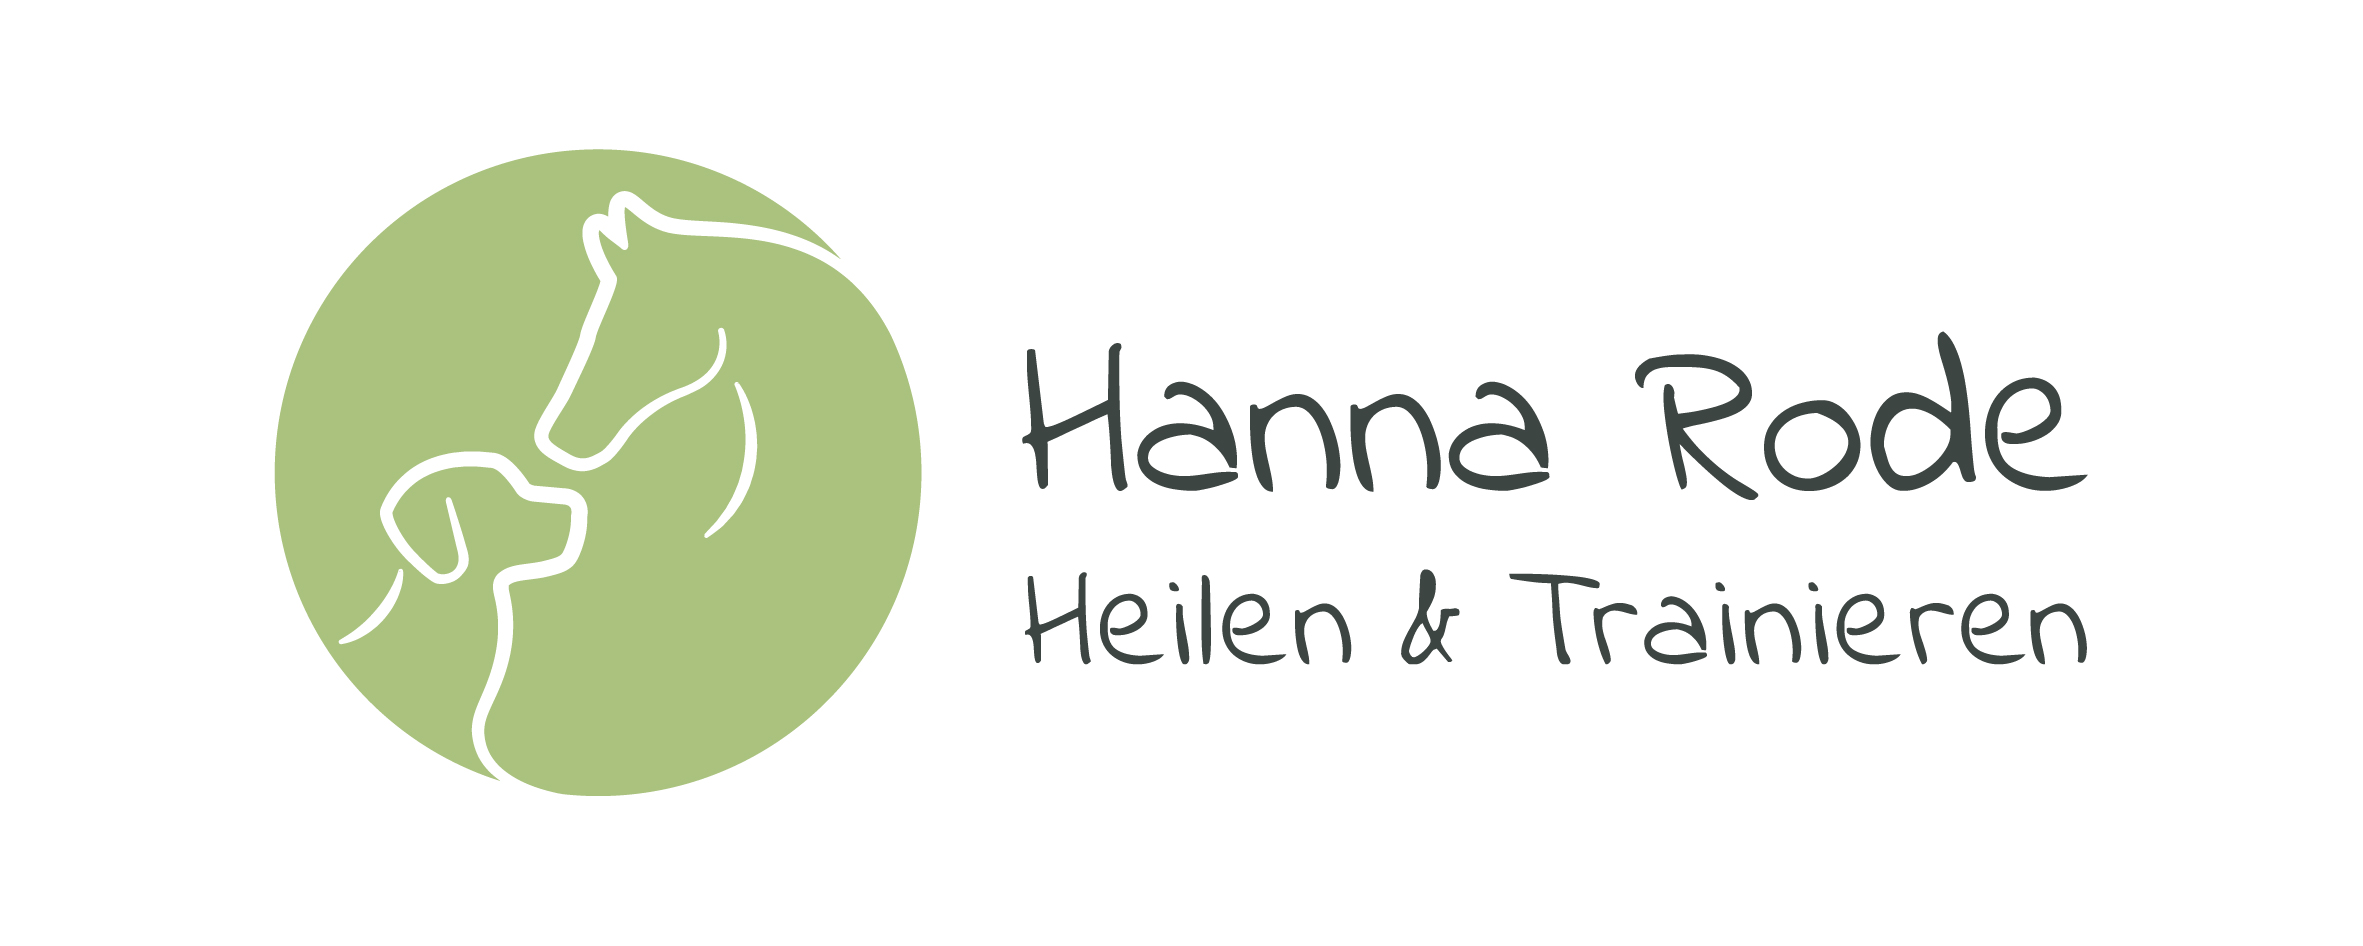 Hanna Rode - Heilen & Trainieren